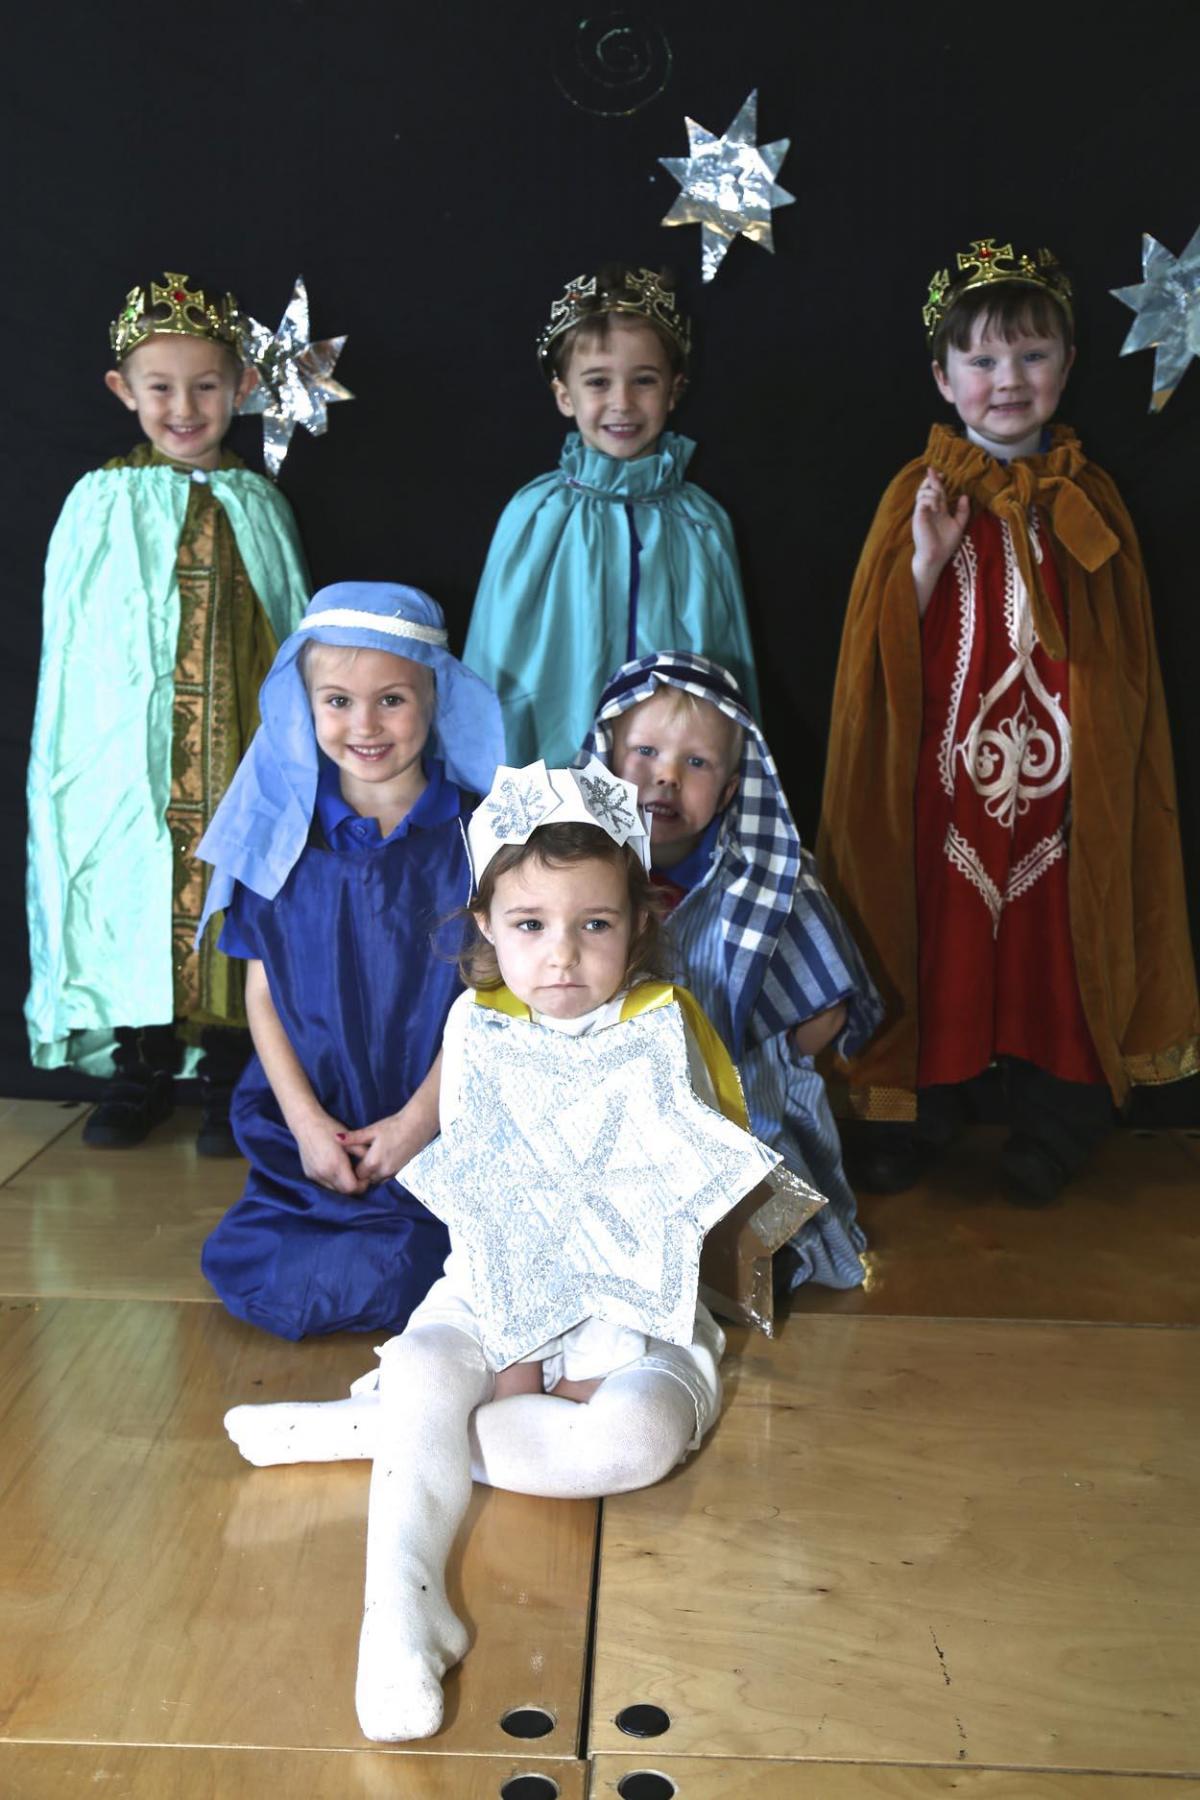 Somerford Primary Community School Nativity Play.  Picture by Sam Sheldon.